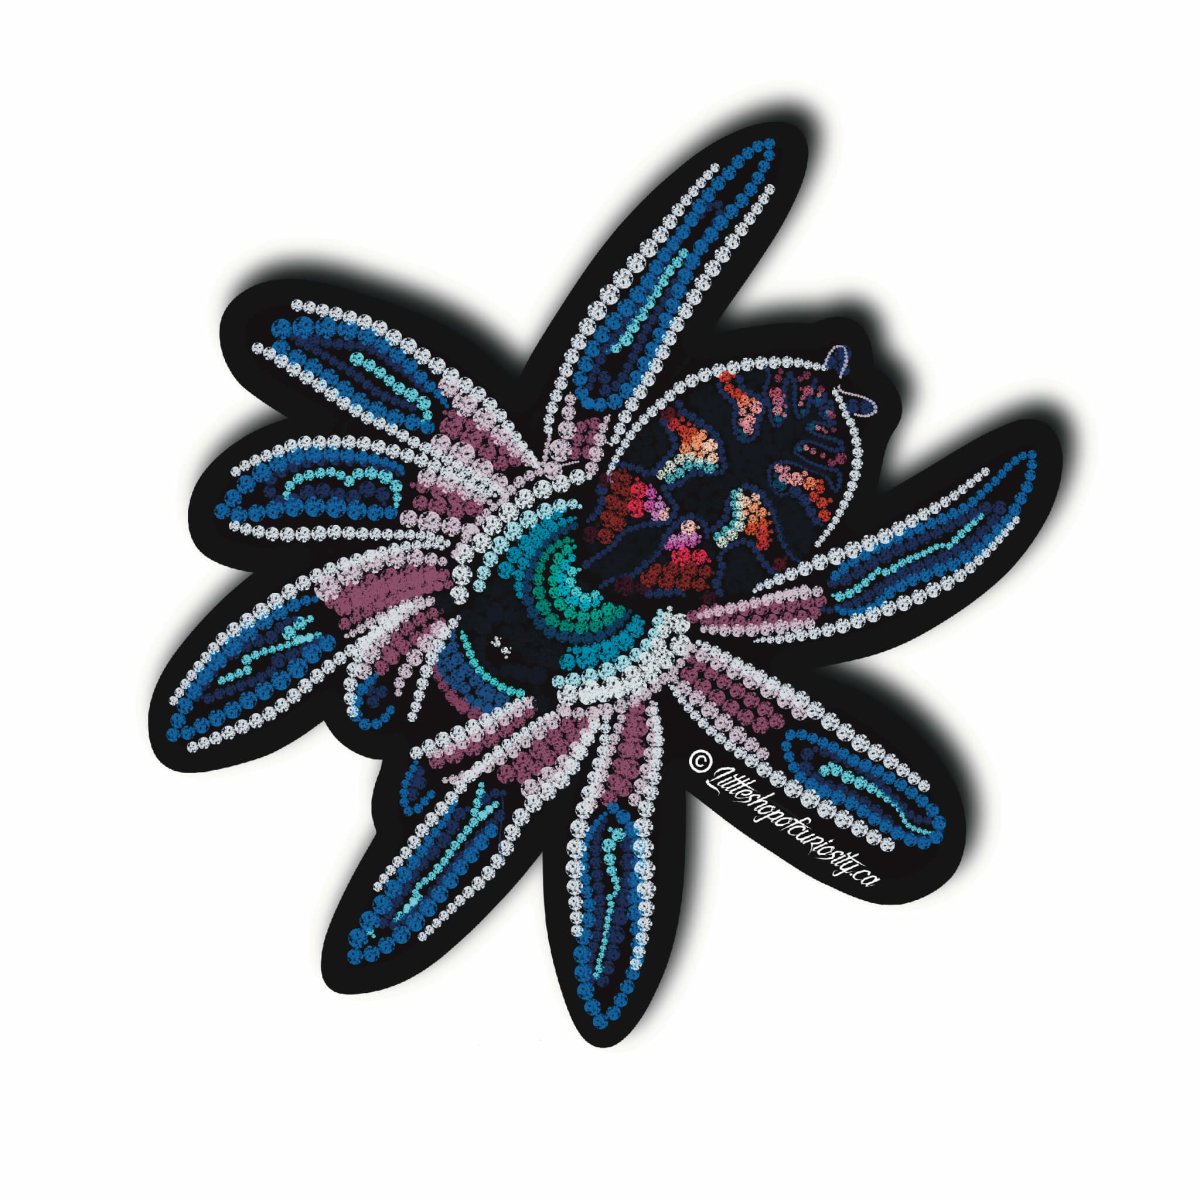 Brazilian Jewel Tarantula Sticker - Jewelled - Colour Sticker - Little Shop of Curiosity